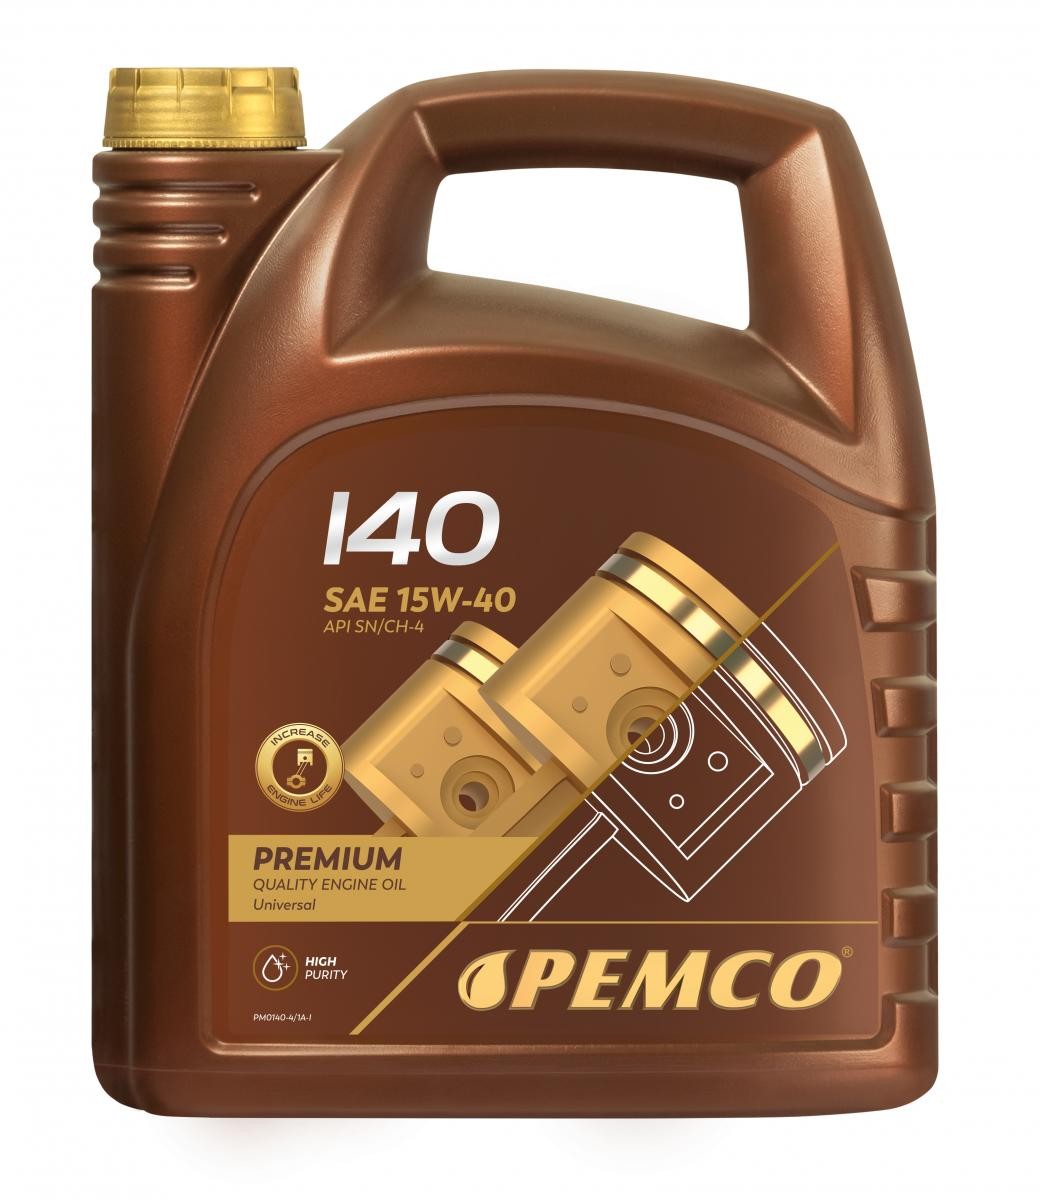 PEMCO iDRIVE 100, iDRIVE 140 PM0140-4 Engine oil 15W-40, 4l, Mineral Oil